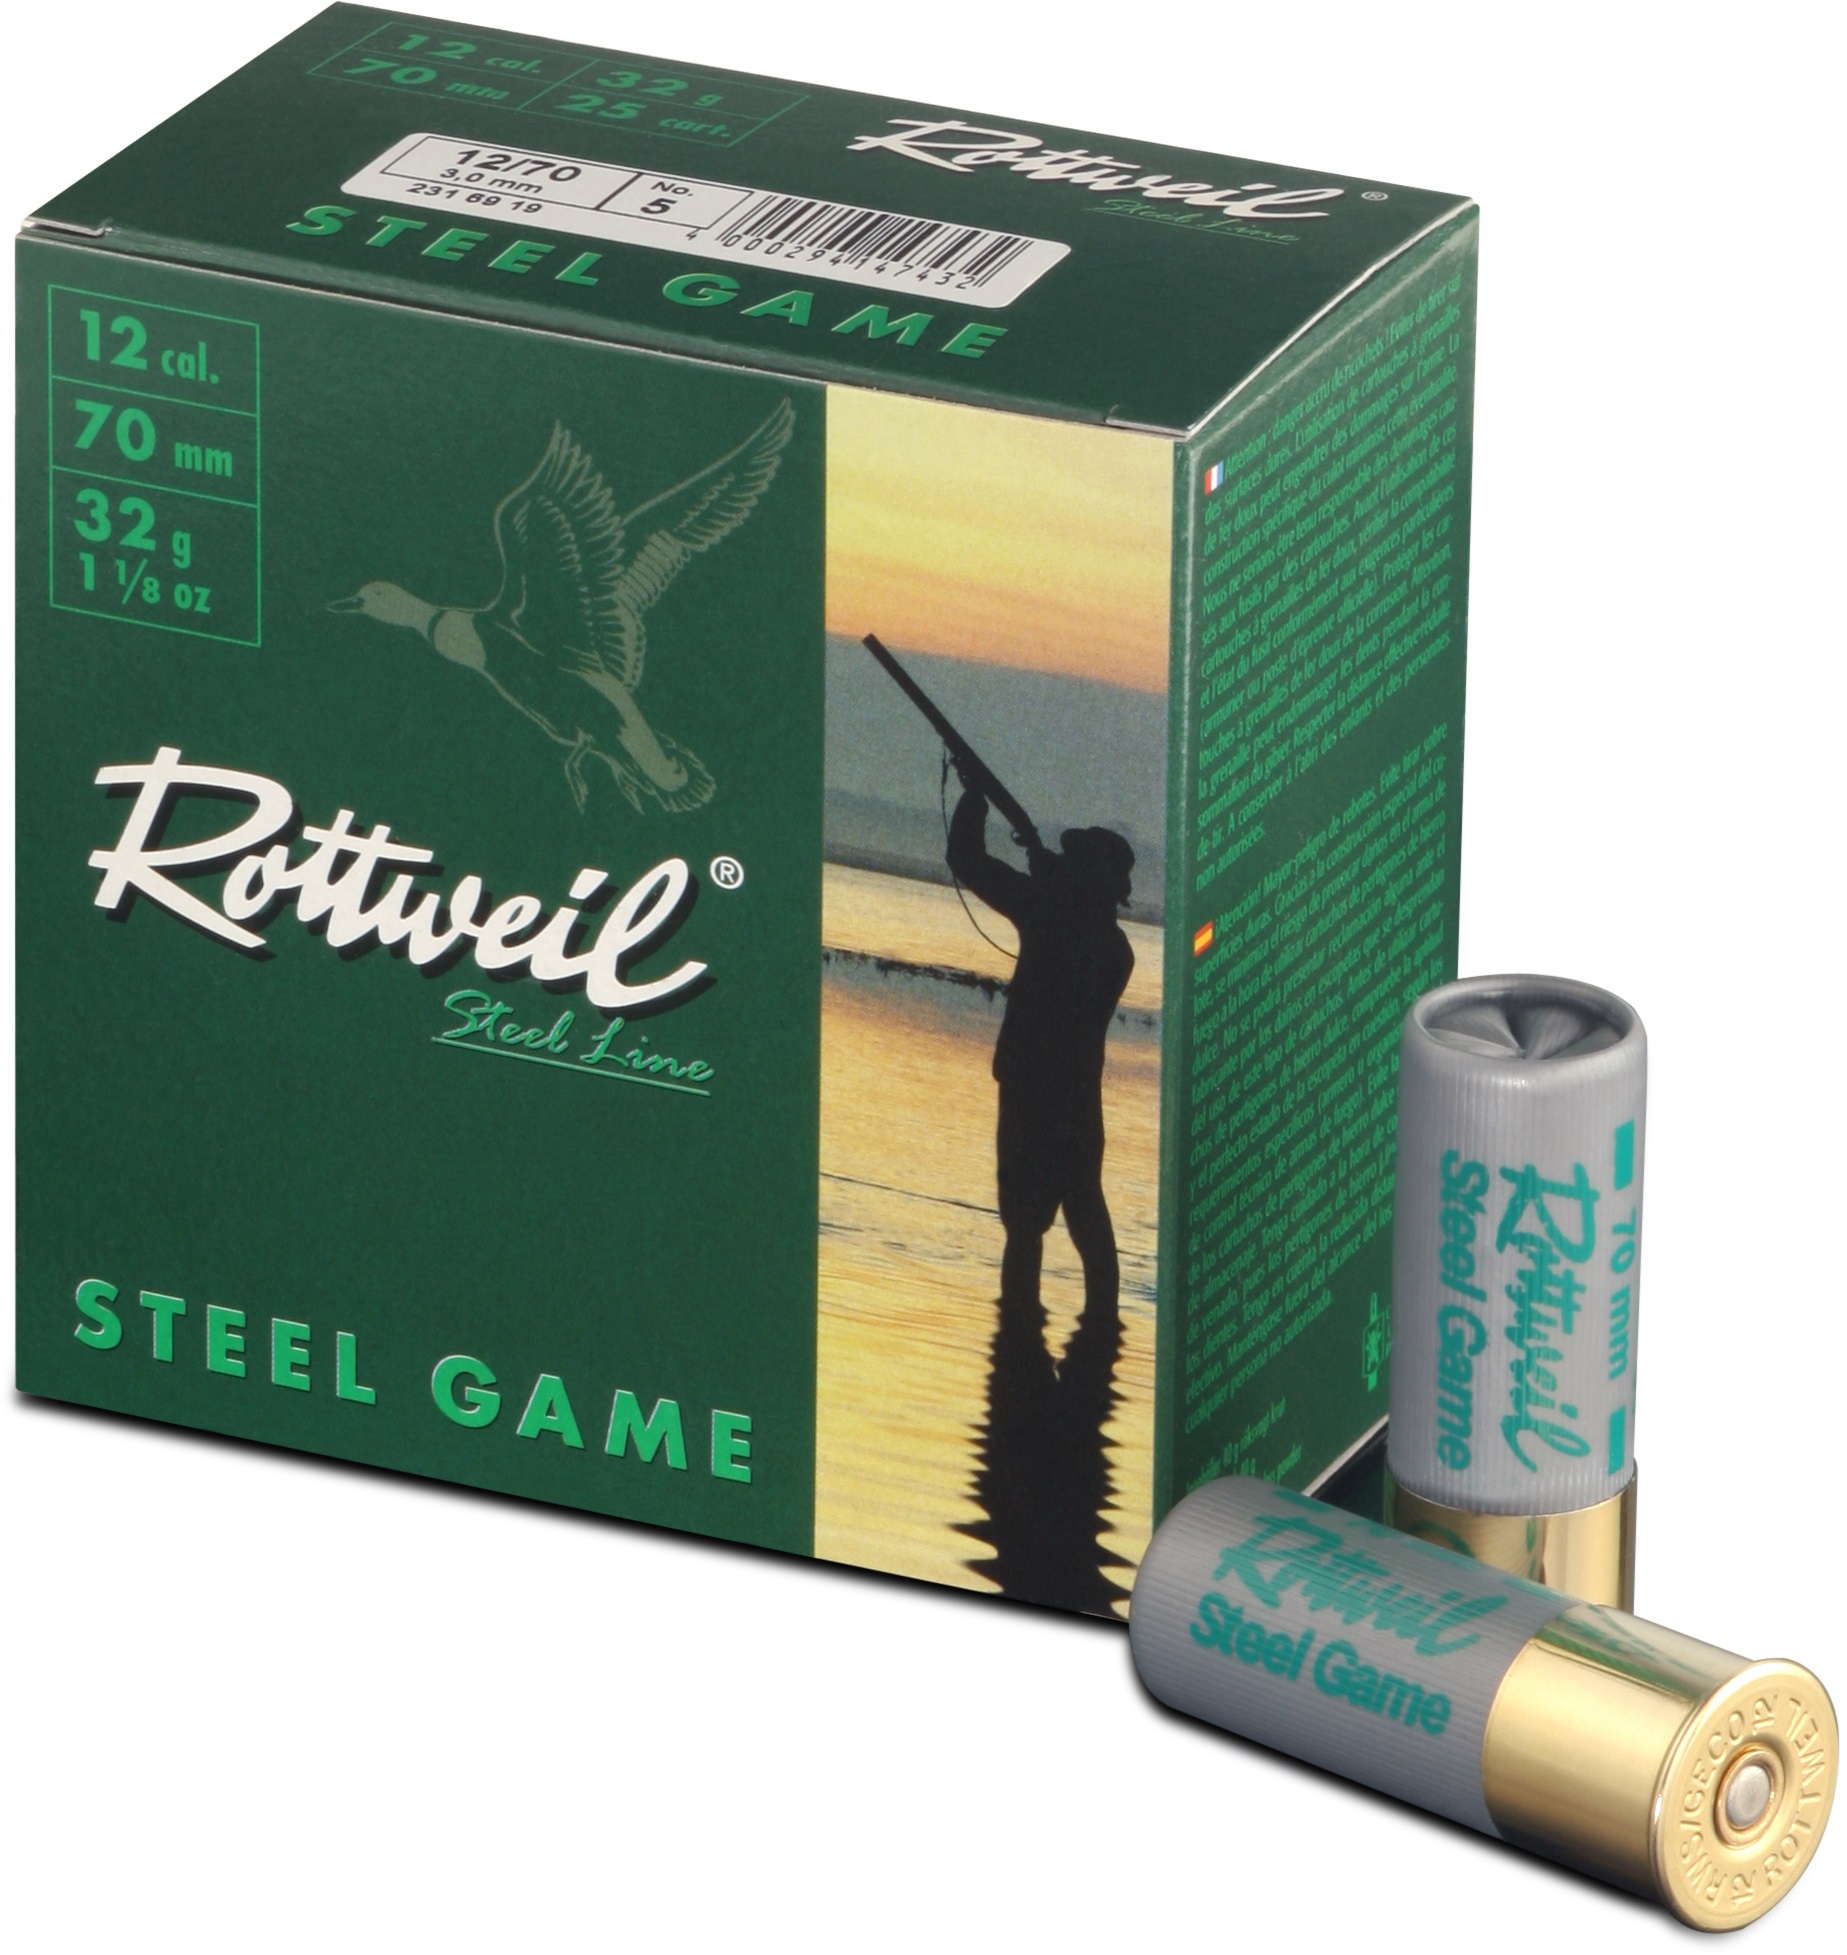 ROTTWEIL-Steel Game 12/70 3,25mm Plastik 25er Pack.